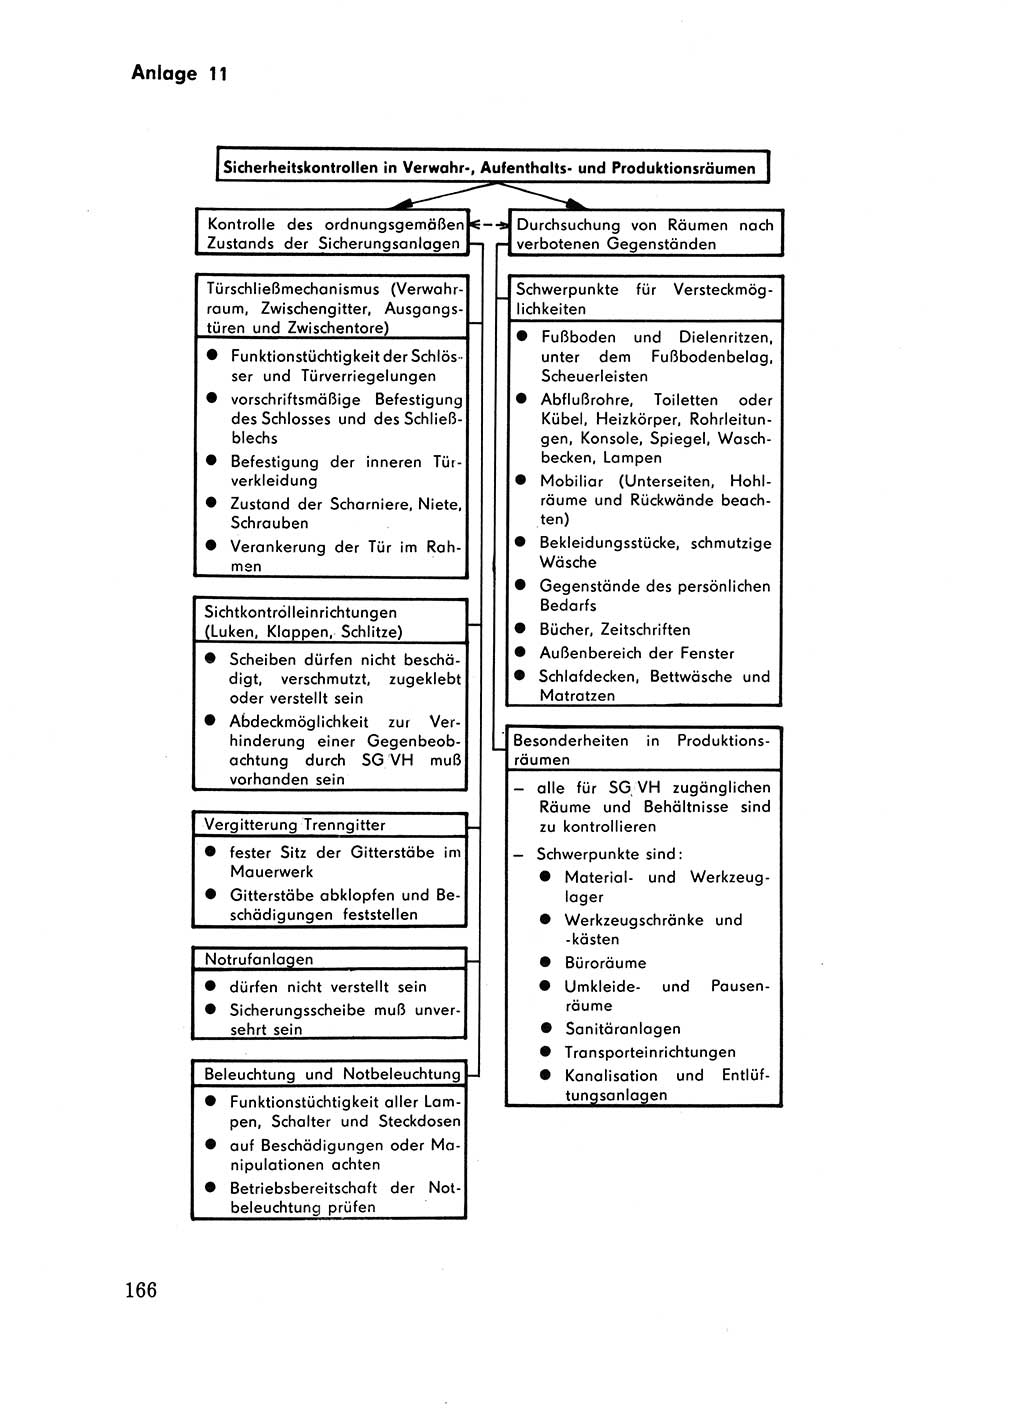 Handbuch für operative Dienste, Abteilung Strafvollzug (SV) [Ministerium des Innern (MdI) Deutsche Demokratische Republik (DDR)] 1981, Seite 166 (Hb. op. D. Abt. SV MdI DDR 1981, S. 166)